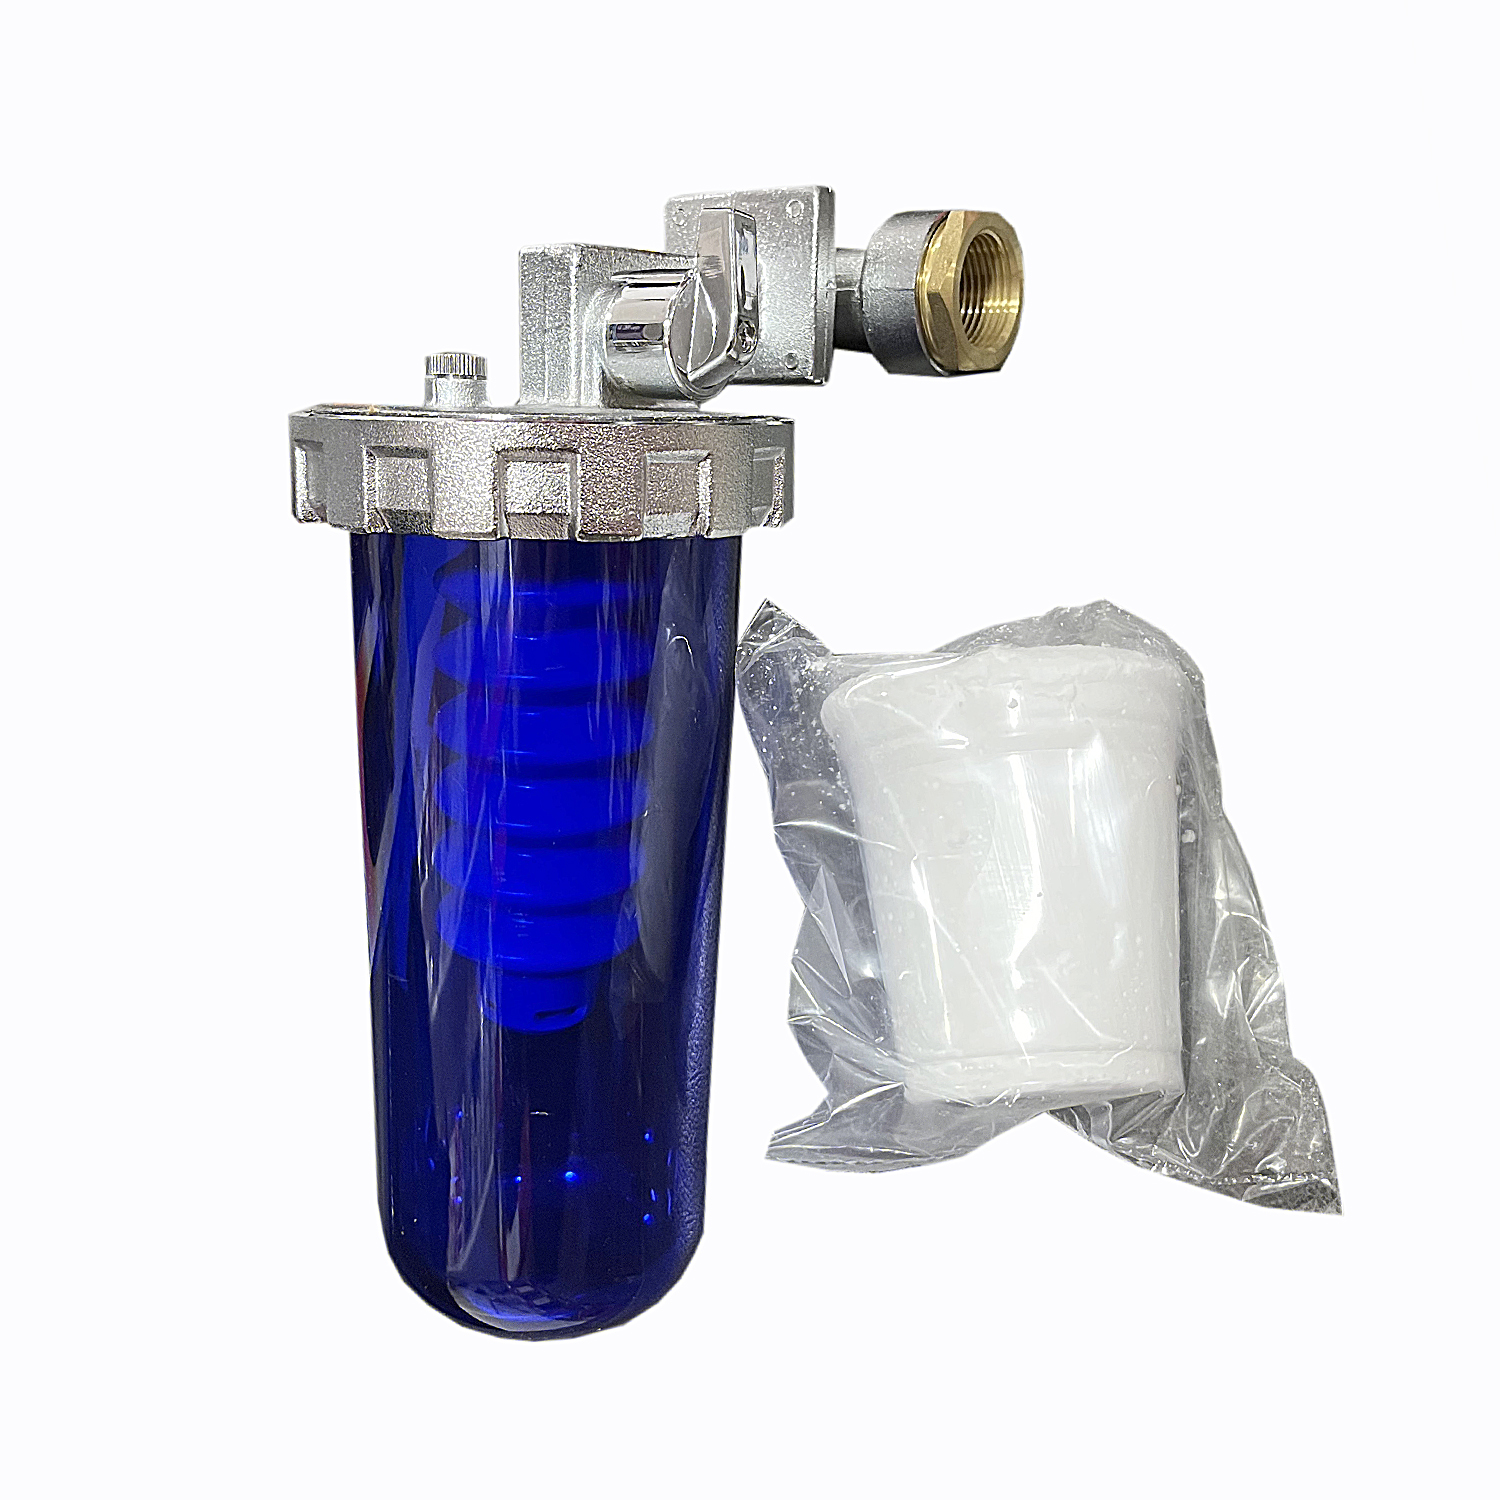 cel mai bun filtru anticalcar centrala termica Filtru apa anticalcar dosapool max filet 1-3/4 centrala termica-boiler